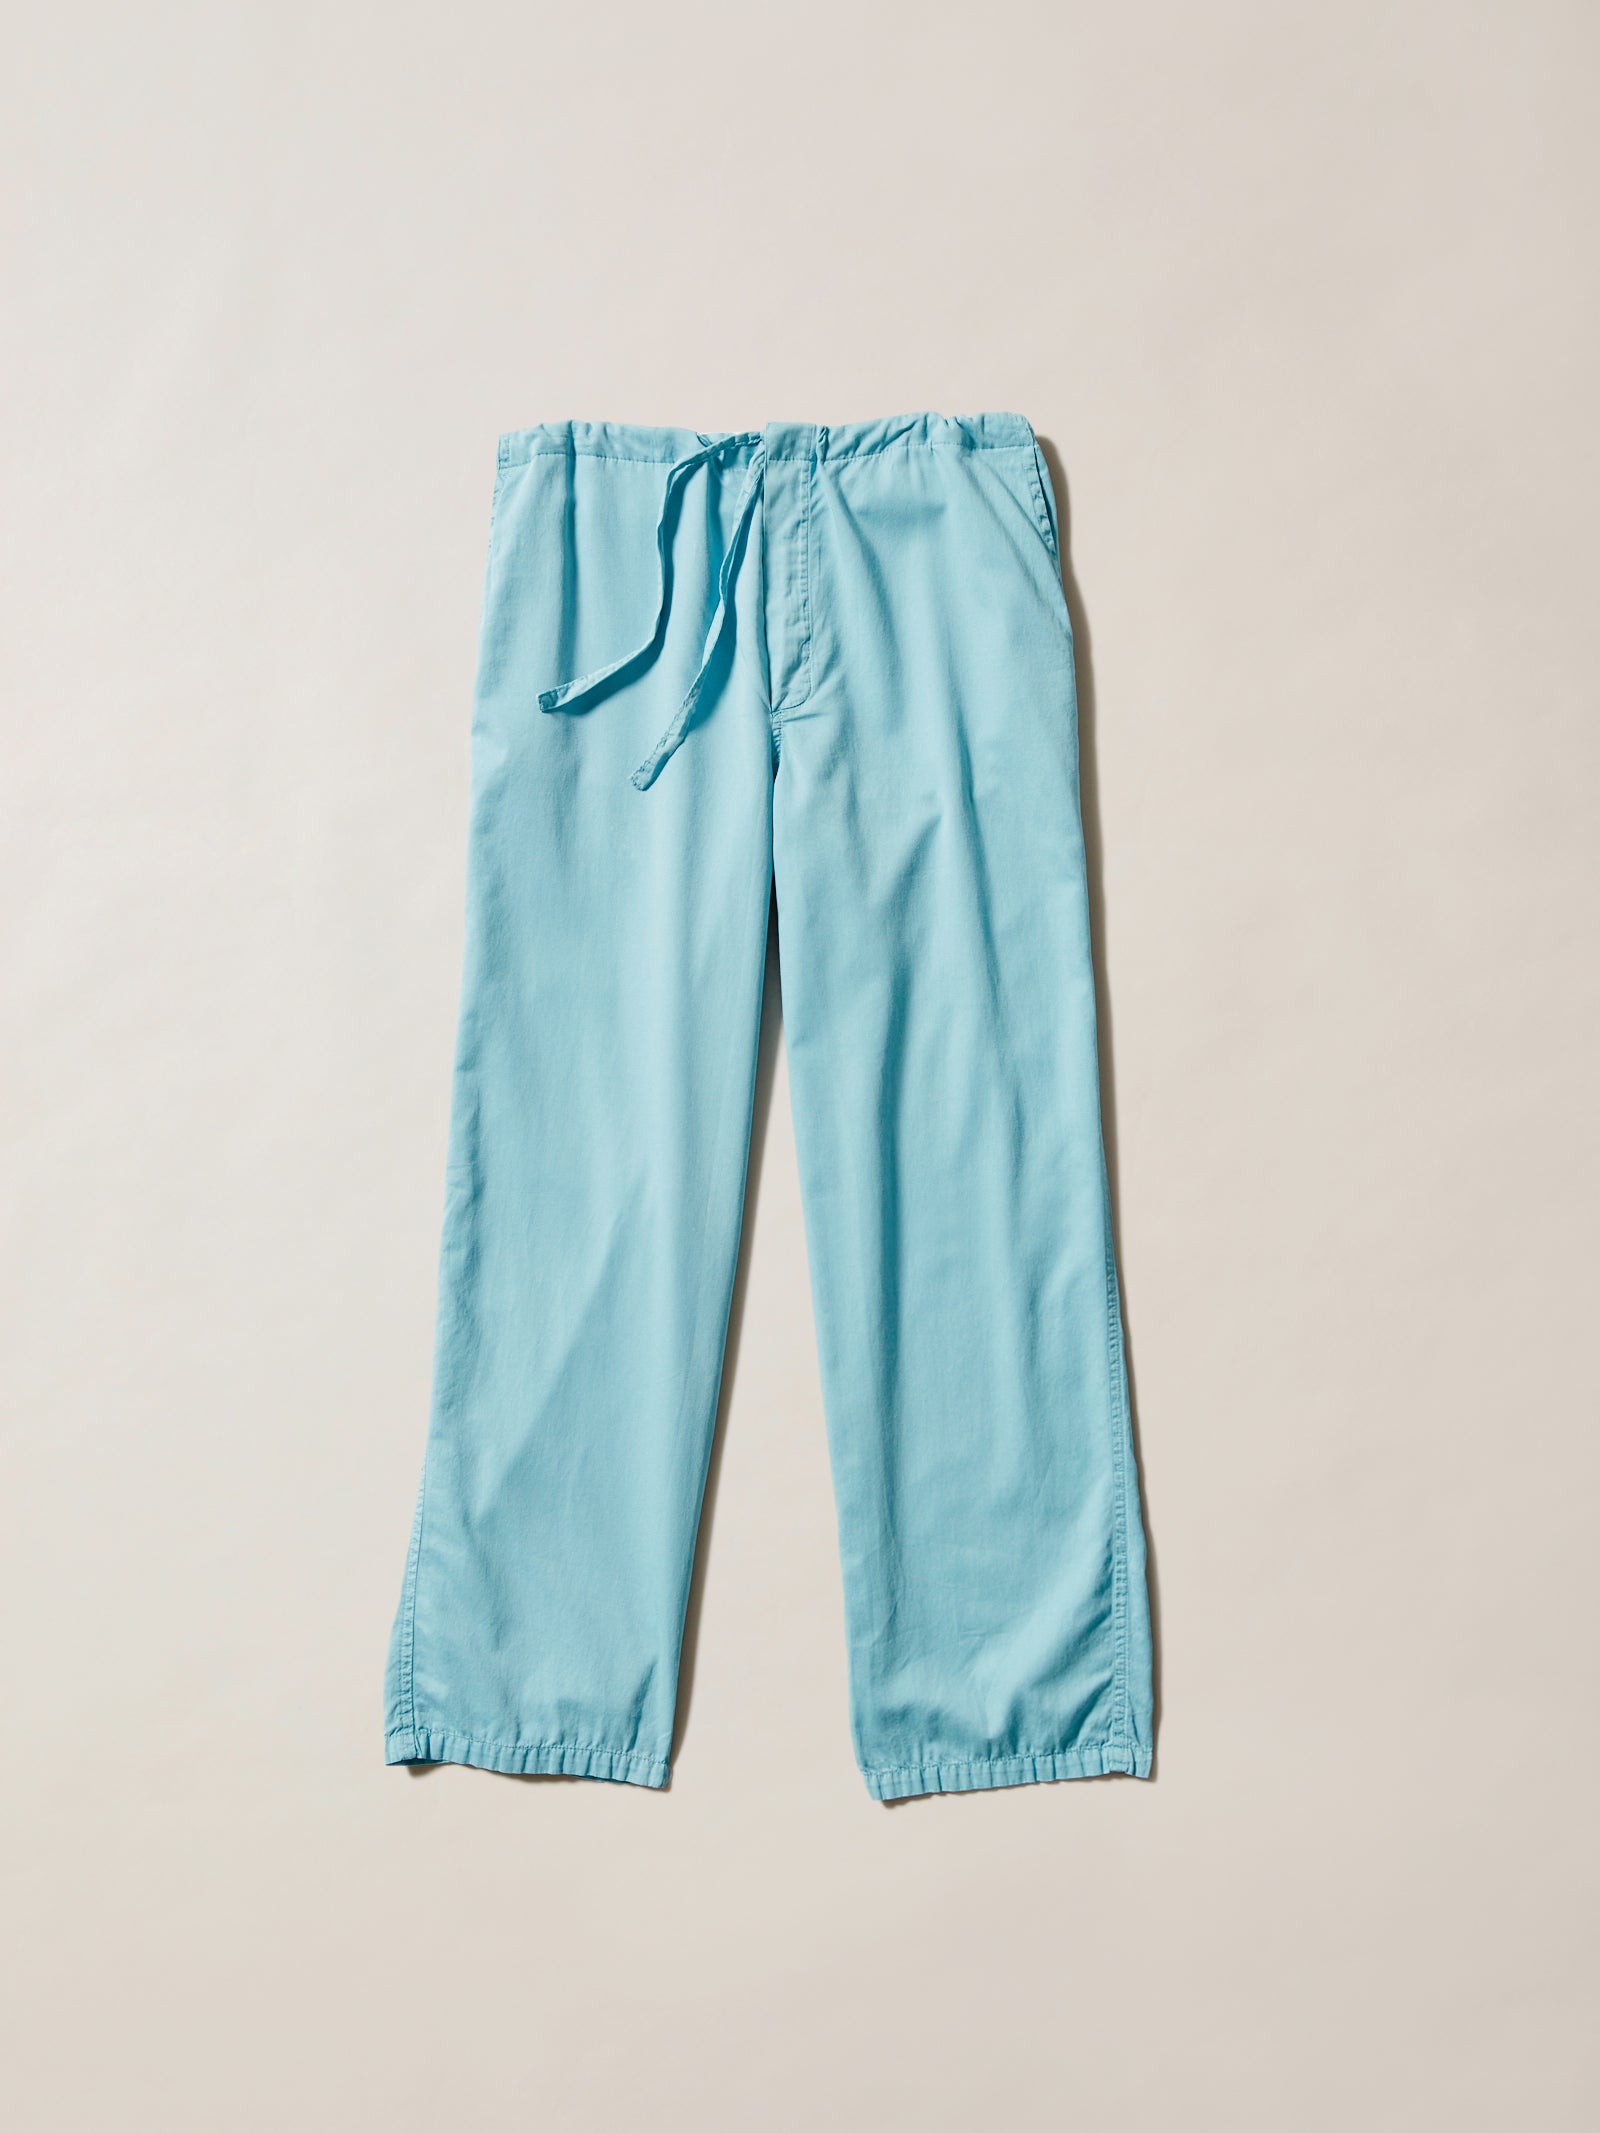 100% cotton blue cotton pyjamas, long pyjama pants, drawstring loungepants long